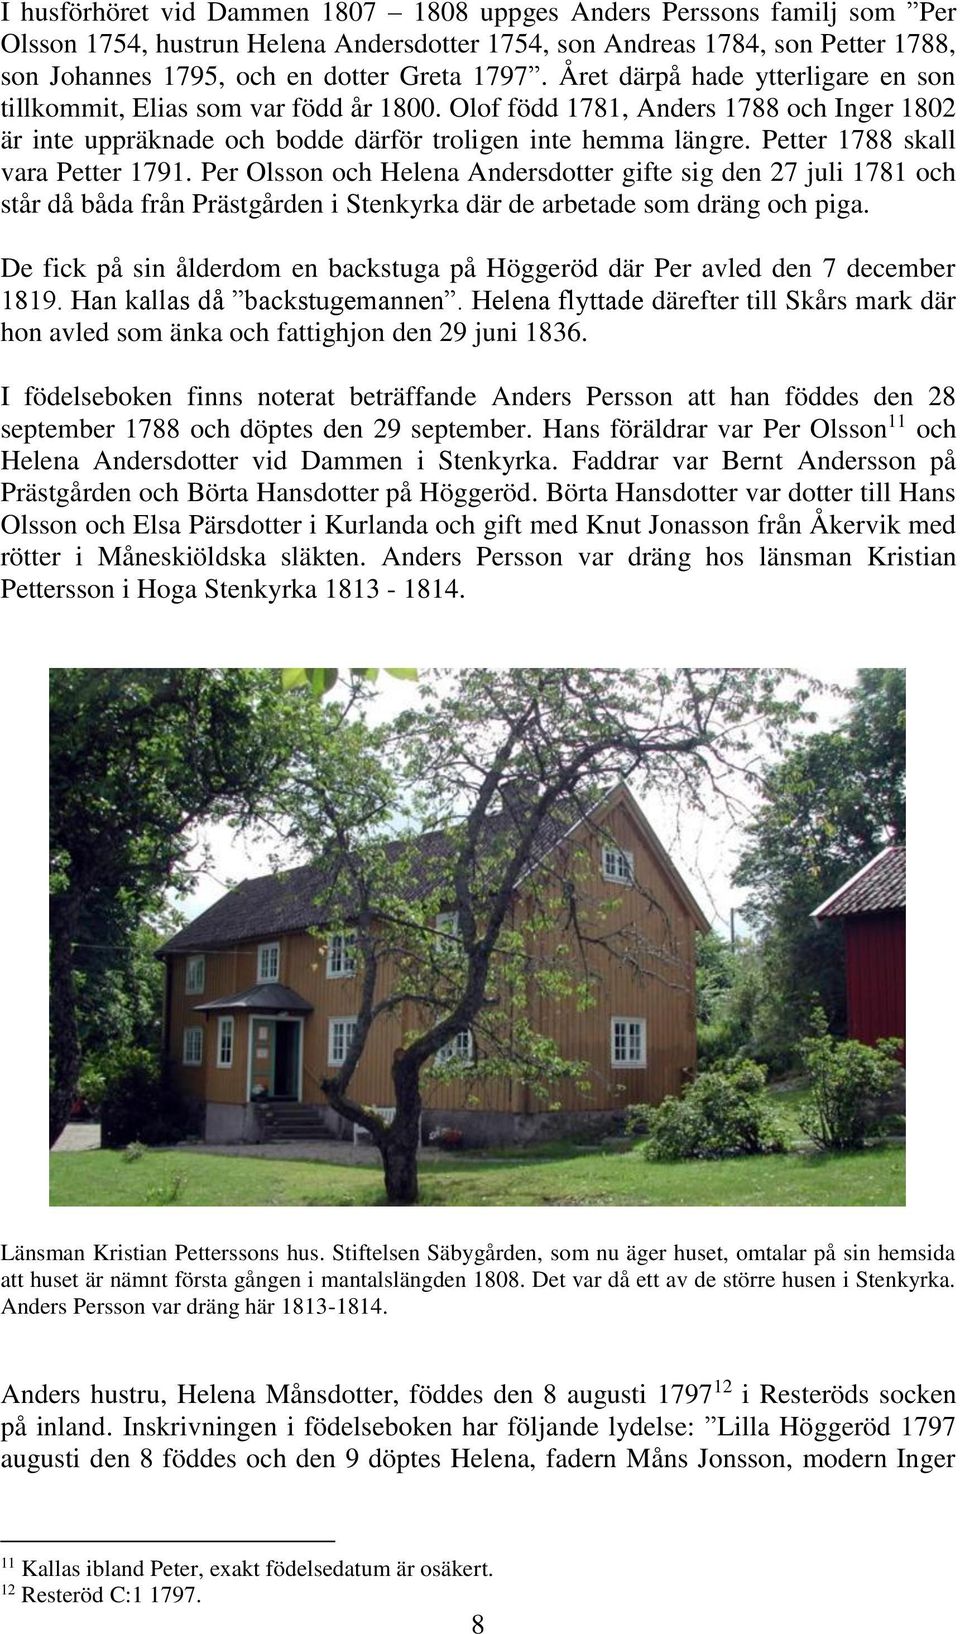 Petter 1788 skall vara Petter 1791. Per Olsson och Helena Andersdotter gifte sig den 27 juli 1781 och står då båda från Prästgården i Stenkyrka där de arbetade som dräng och piga.